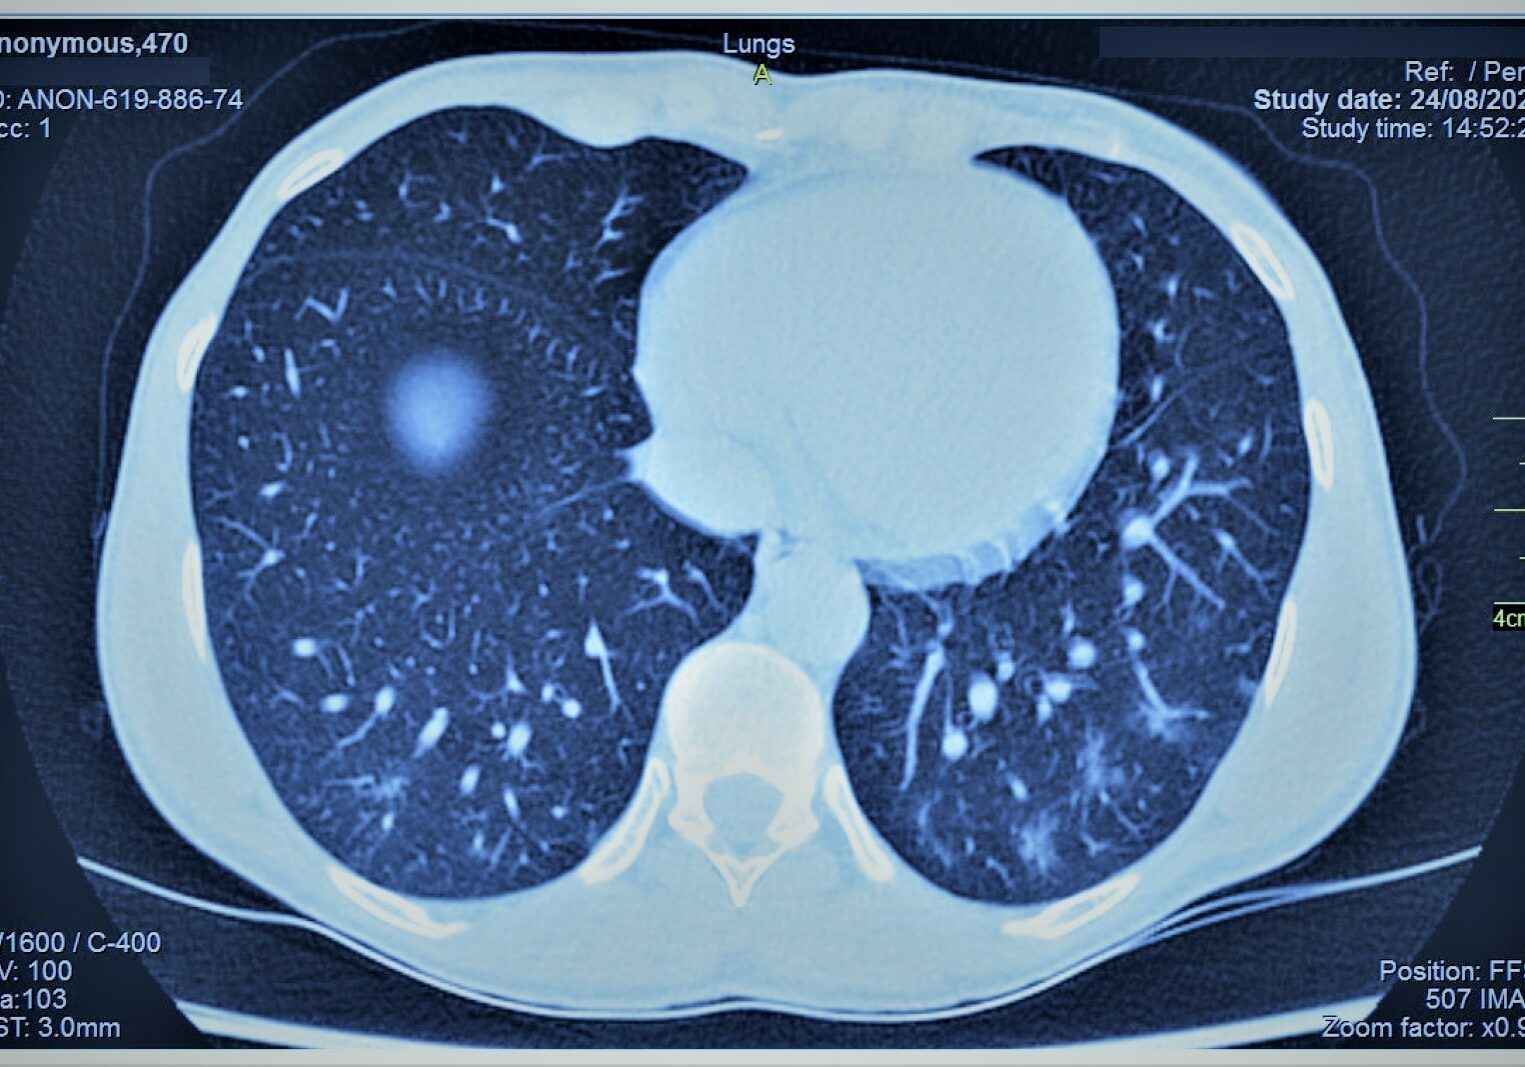 LungsScan